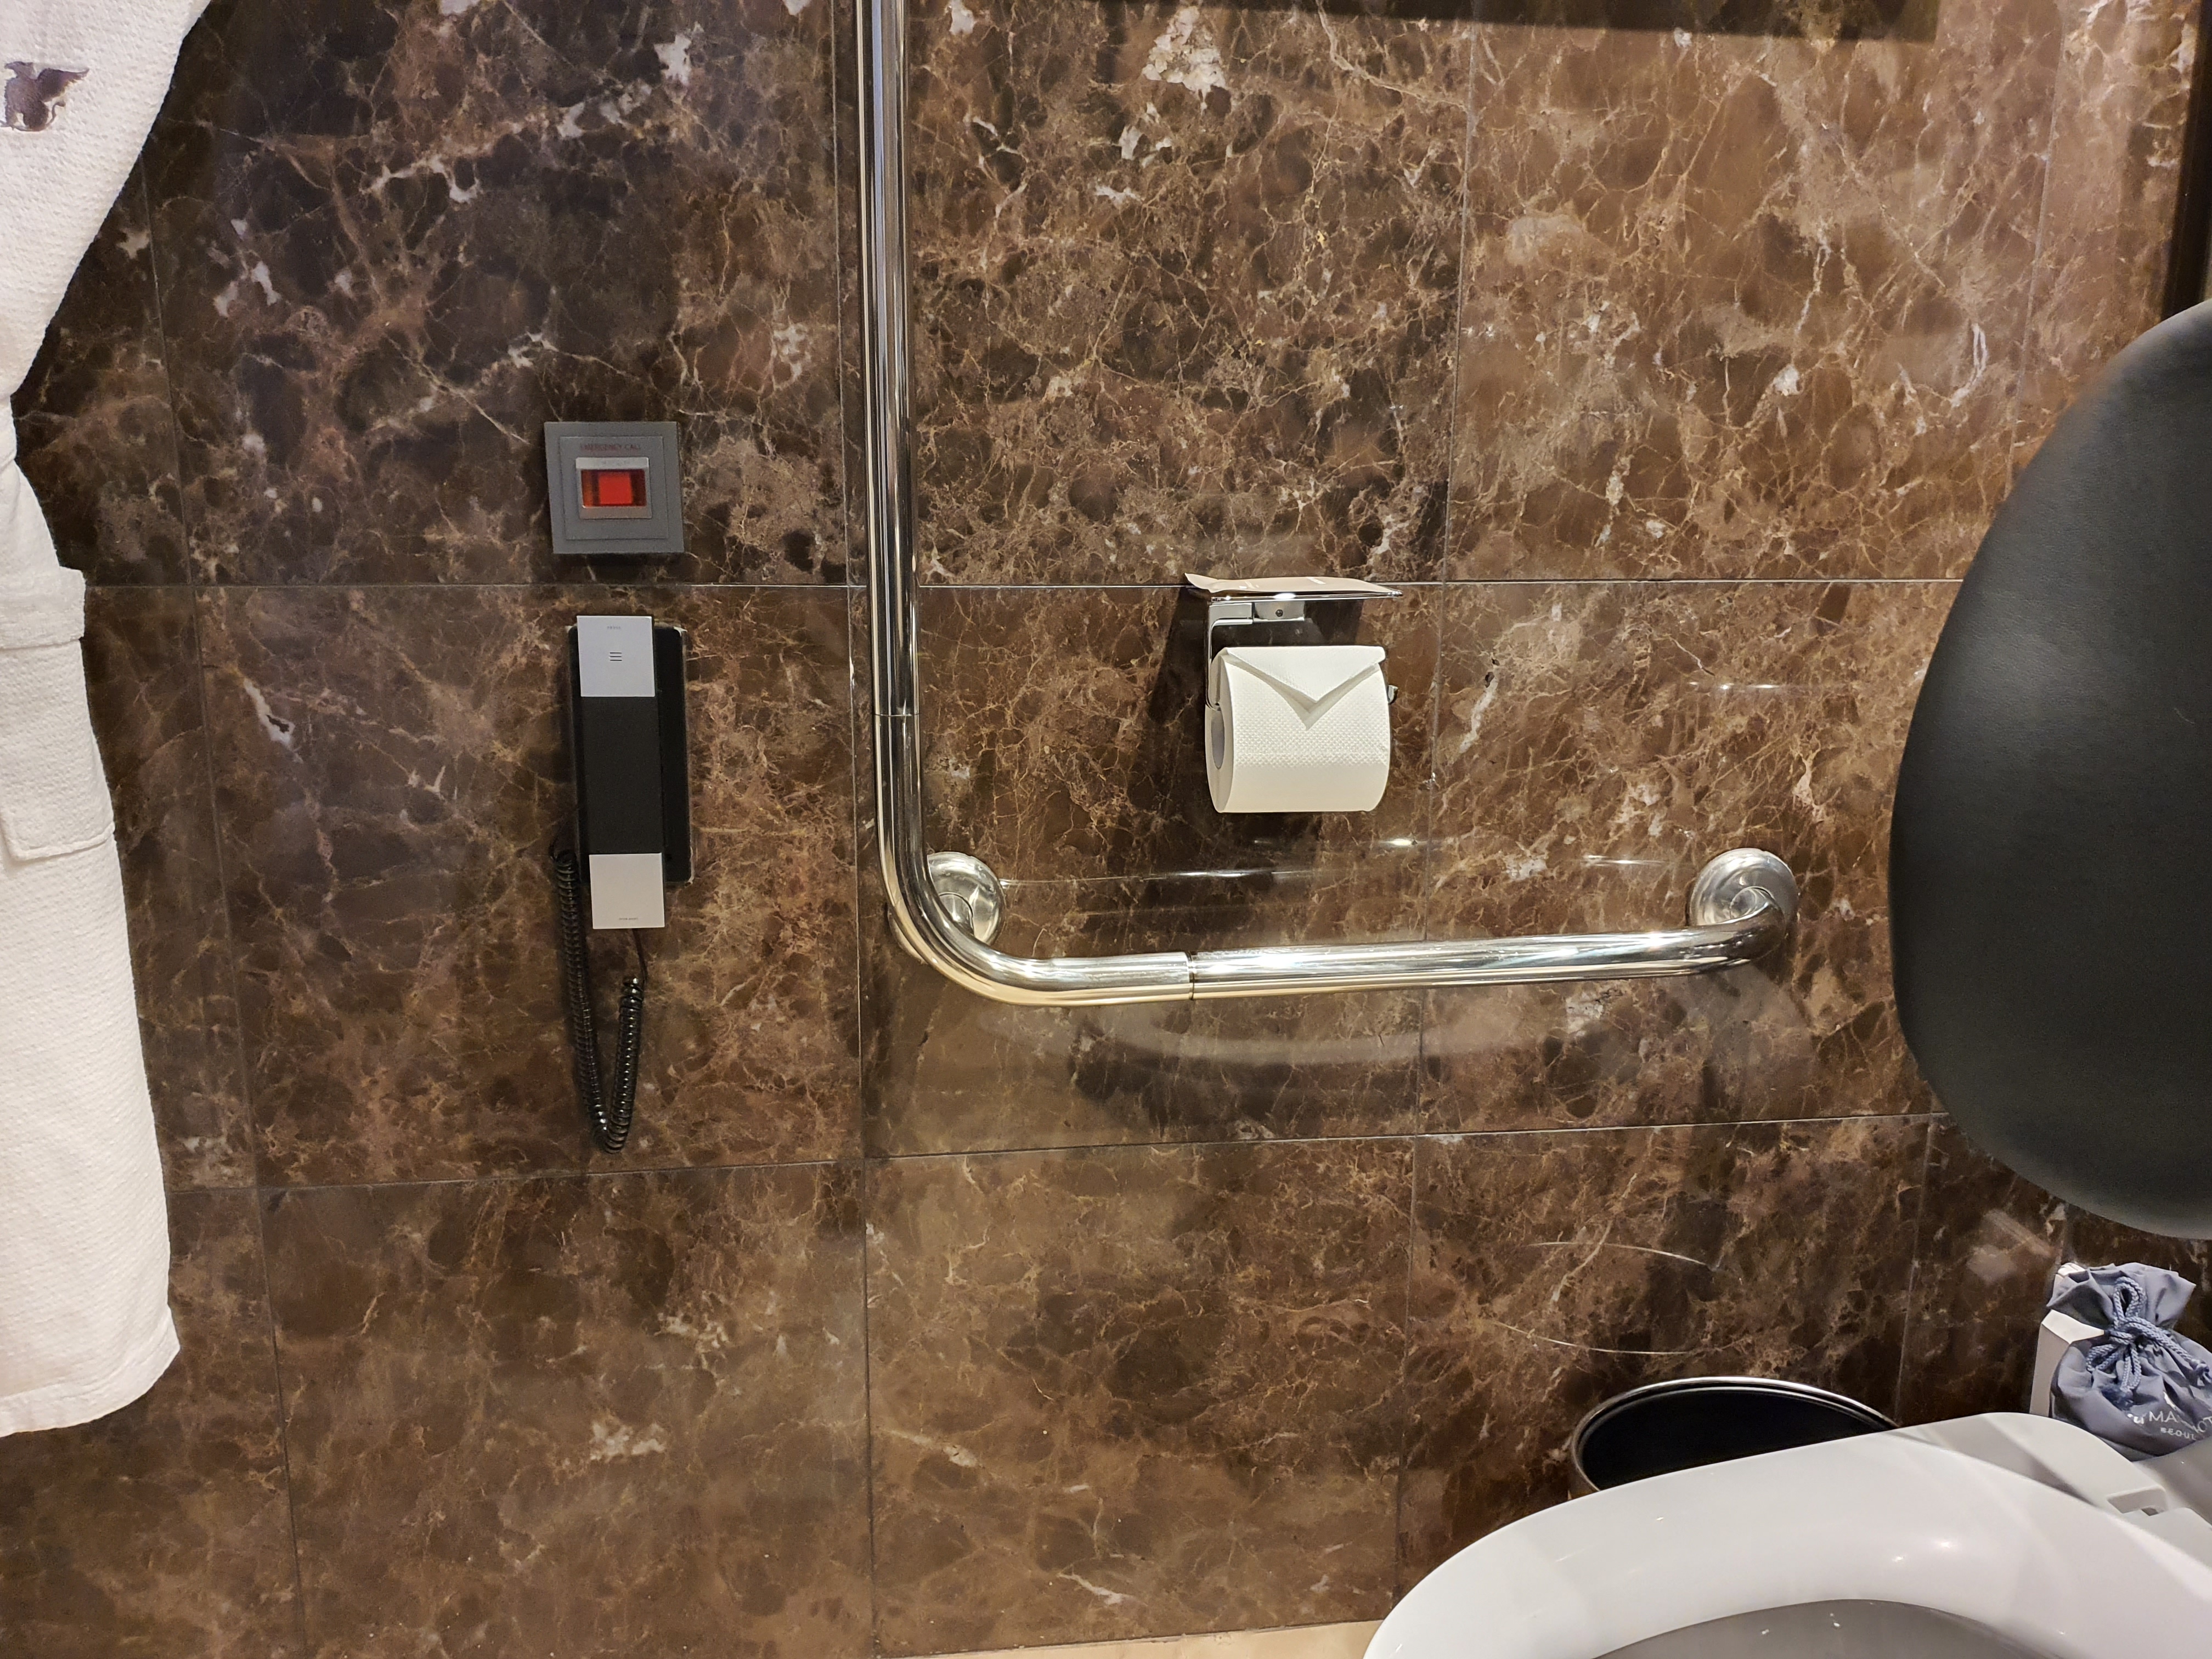 객실 화장실0 : 화장실에 설치된 비상전화와 비상벨